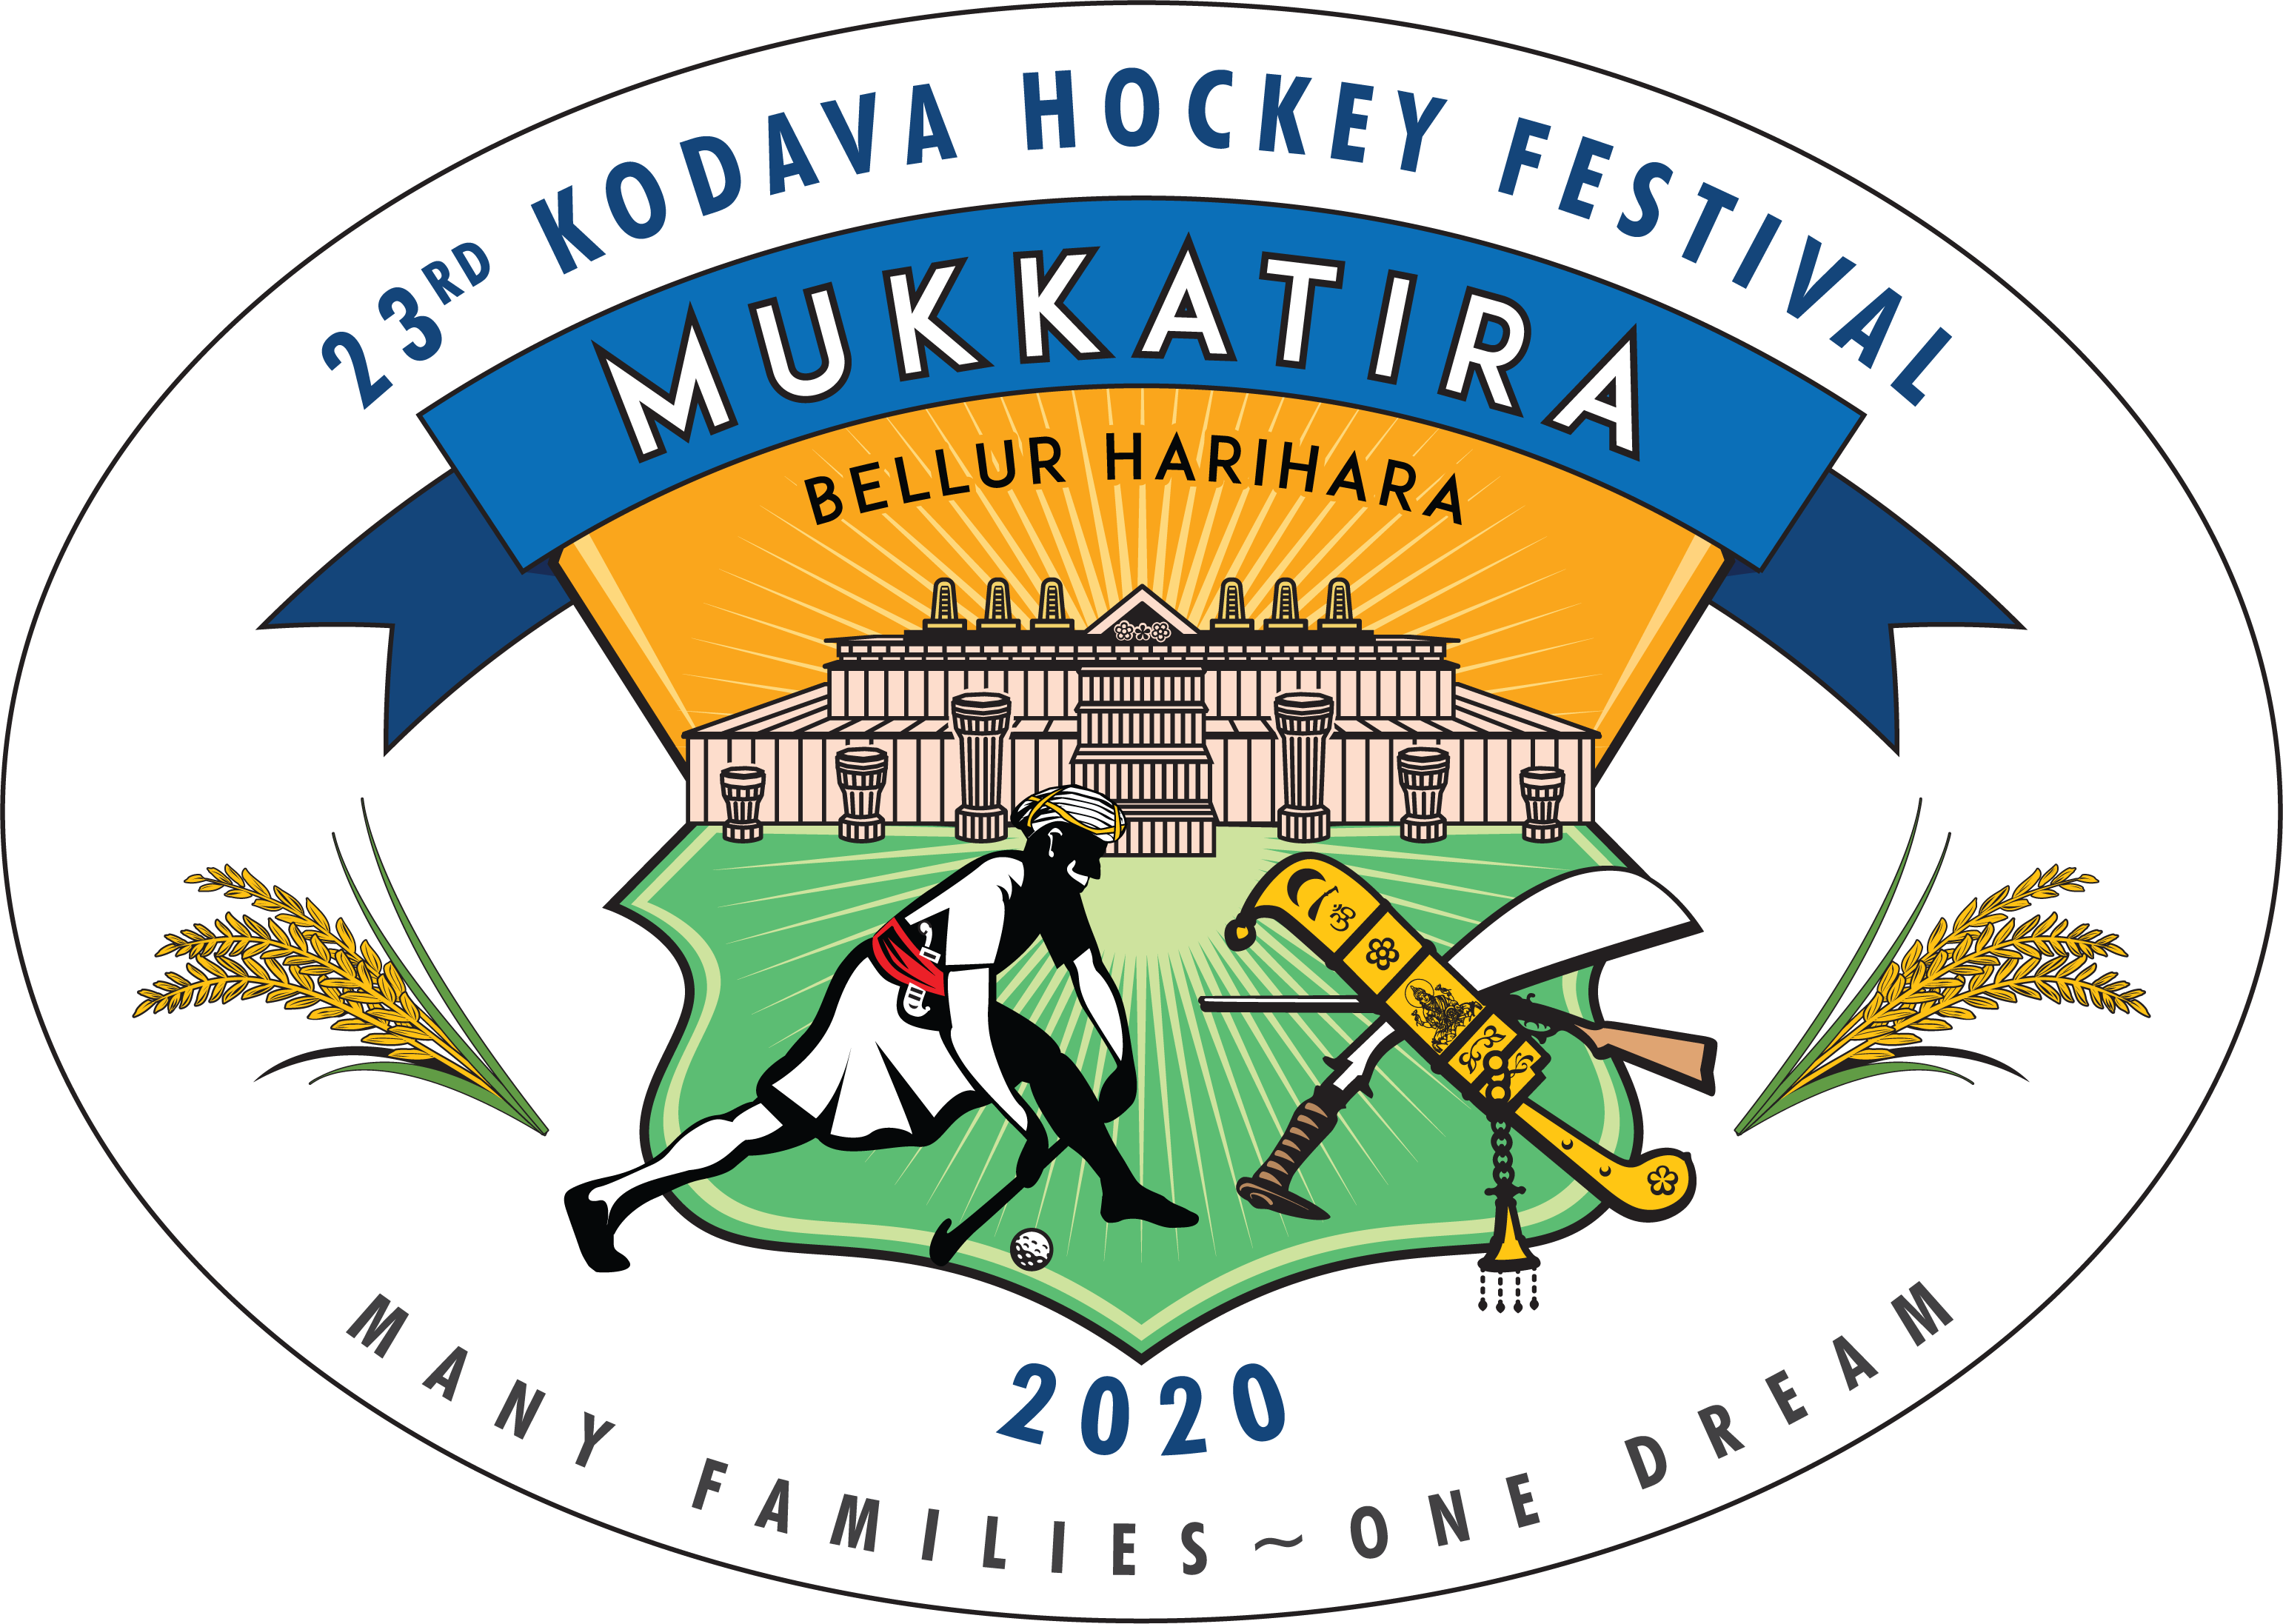 The Mukkatira Hockey Cup